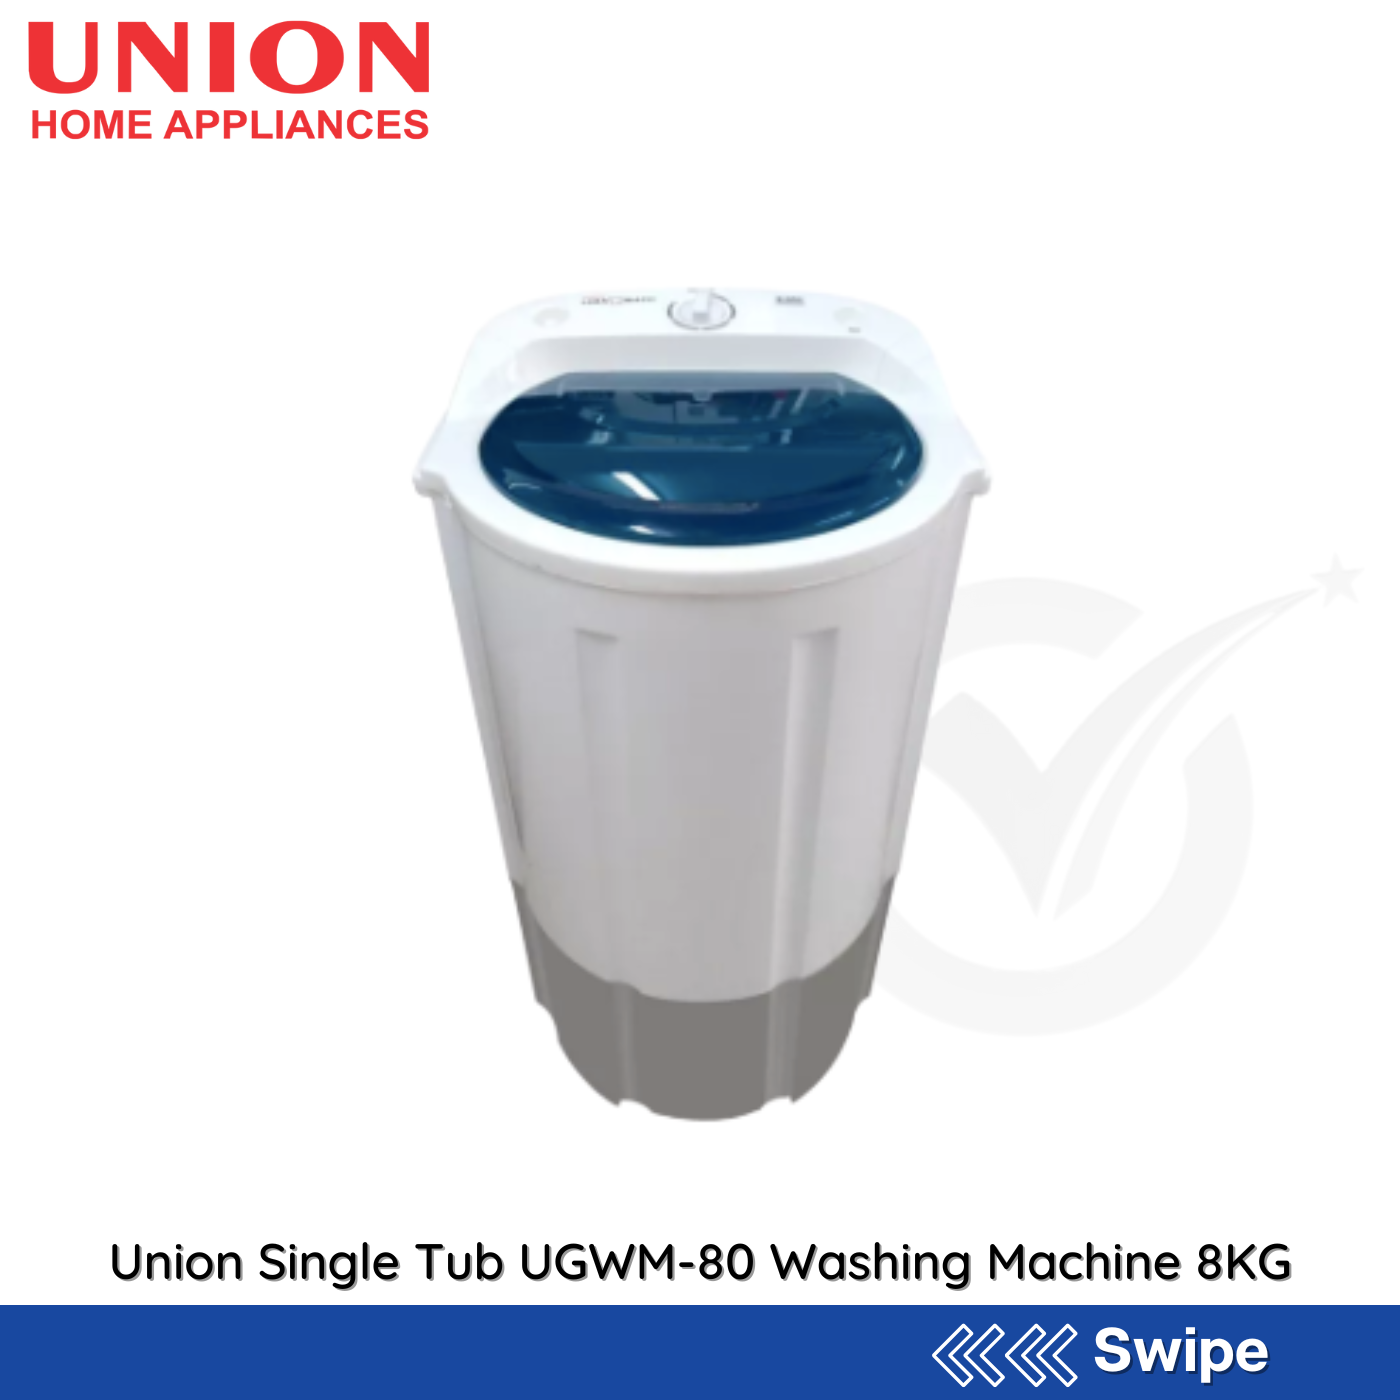 Union Single Tub UGWM-80 Washing Machine 8KG